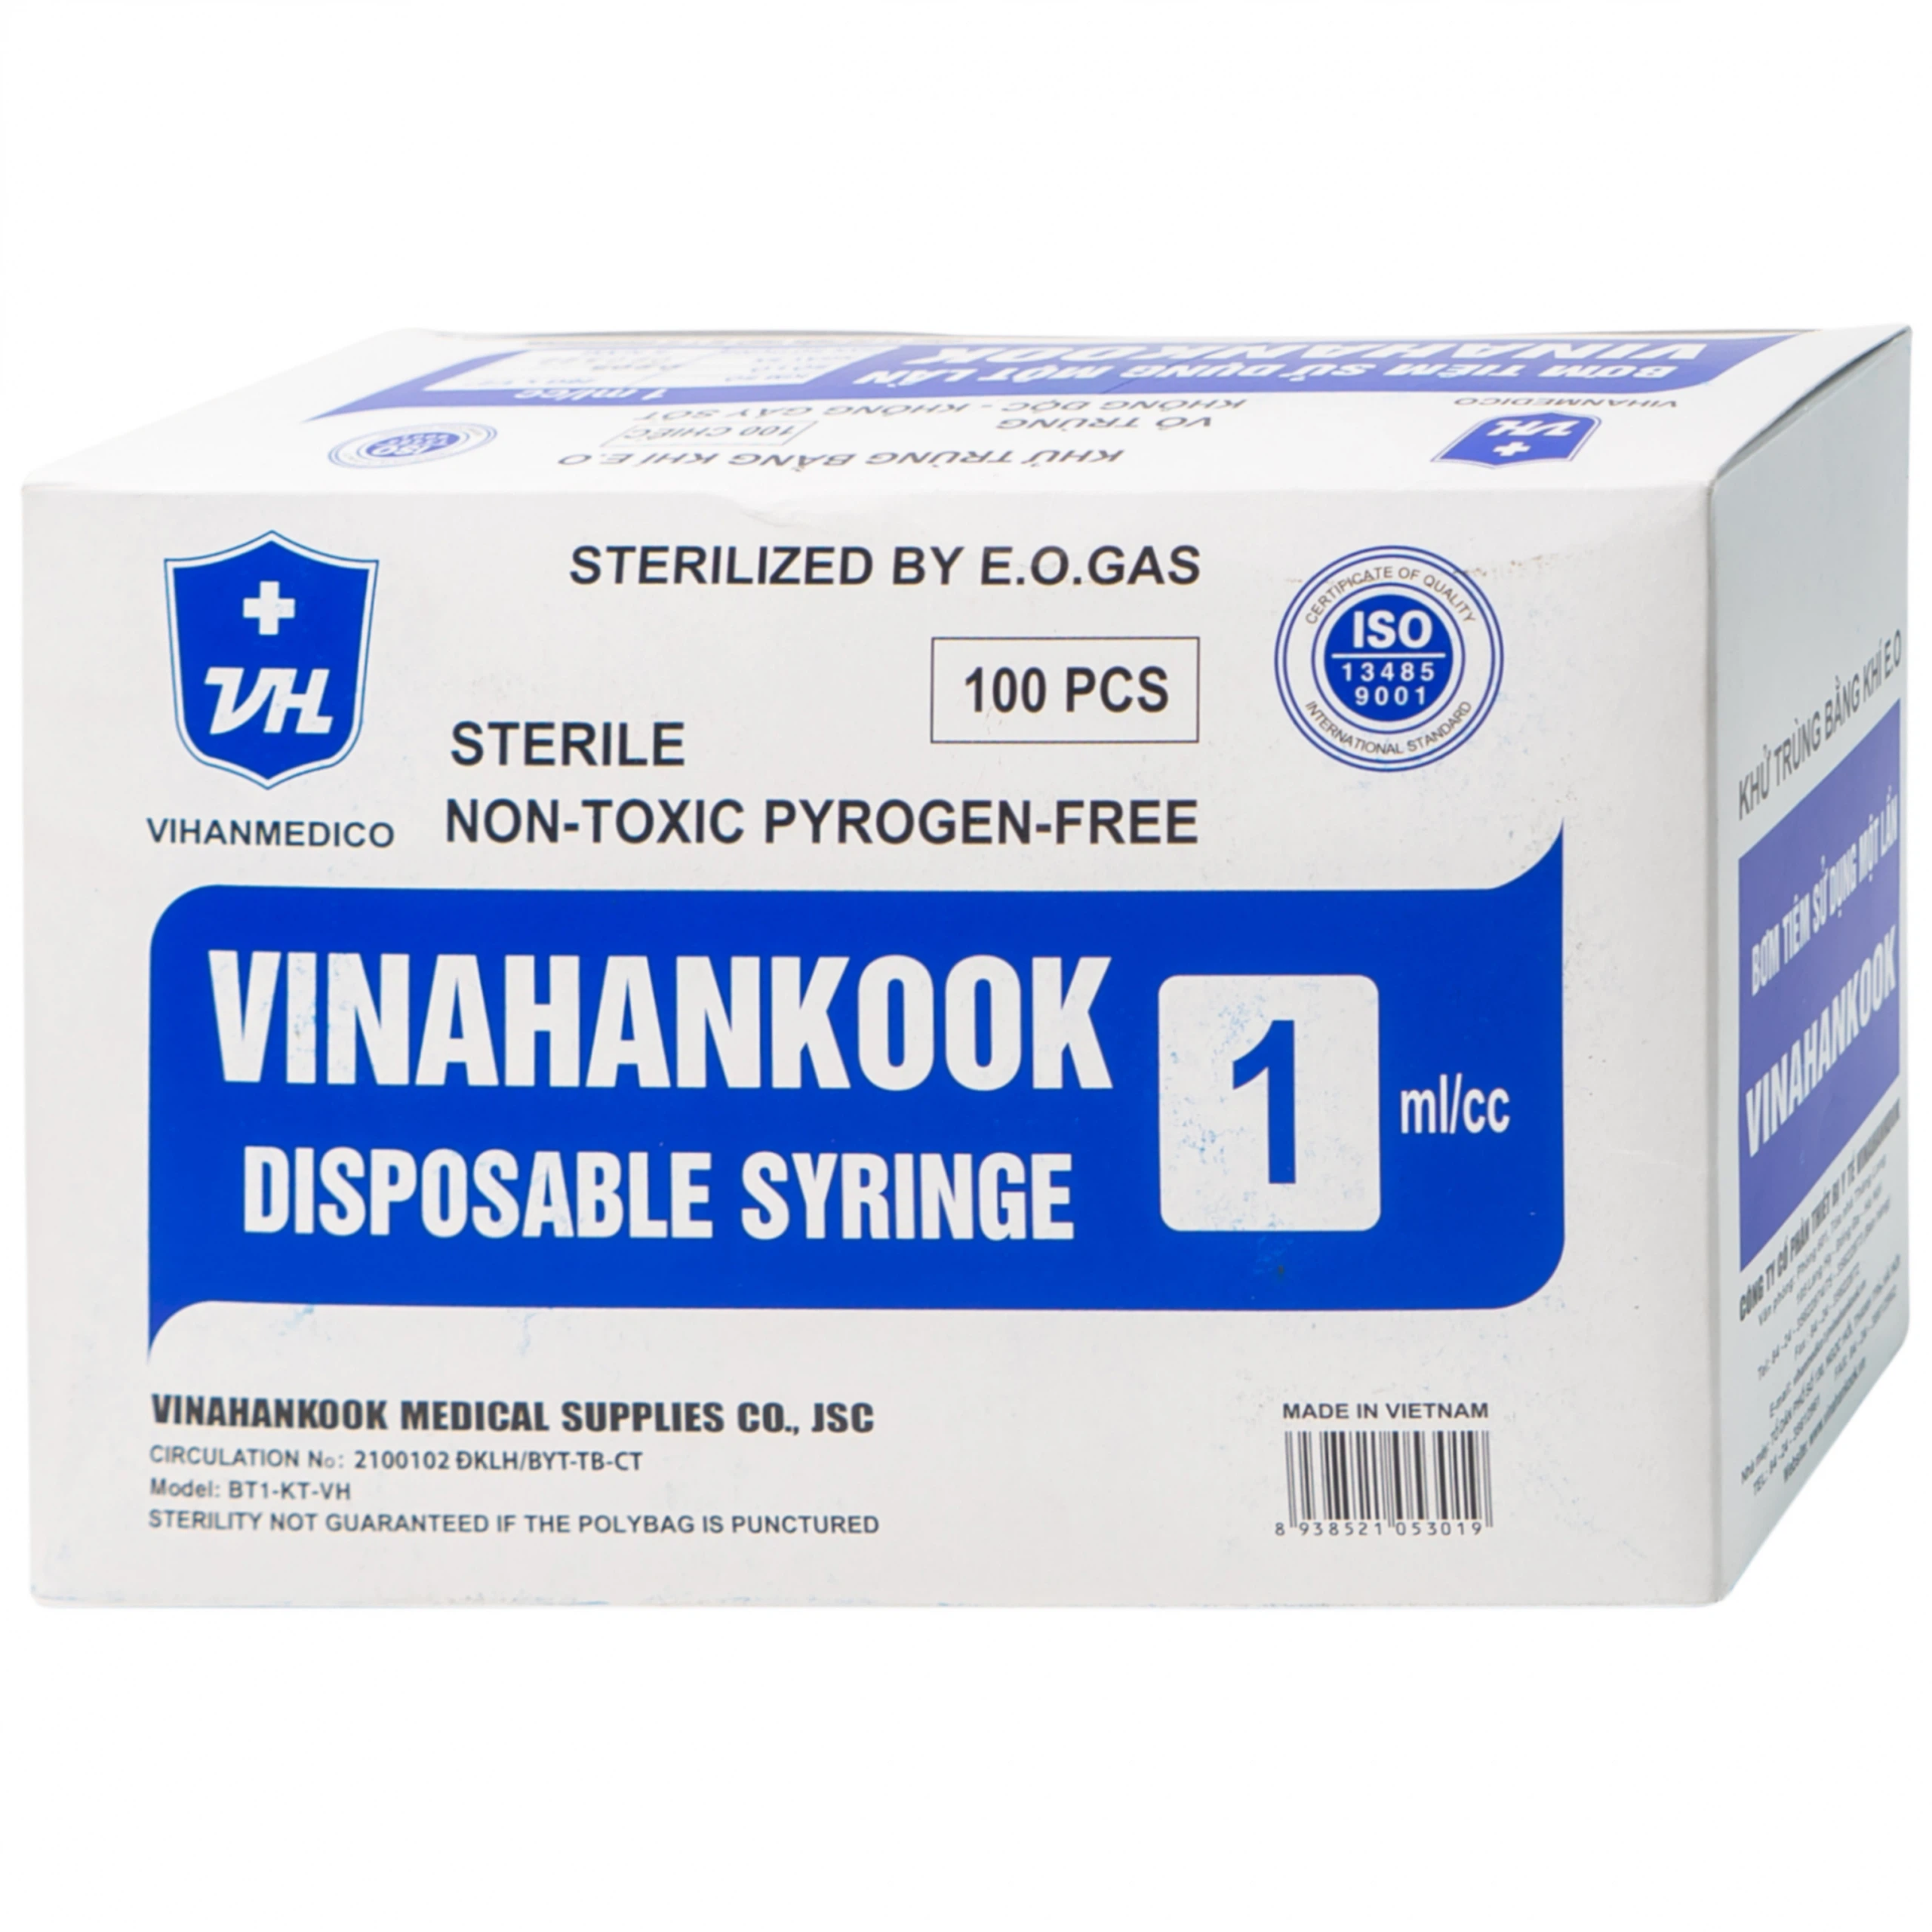 Bơm tiêm sử dụng một lần Vinahankook 1ml/cc được khử trùng bằng khí E.O (100 chiếc)